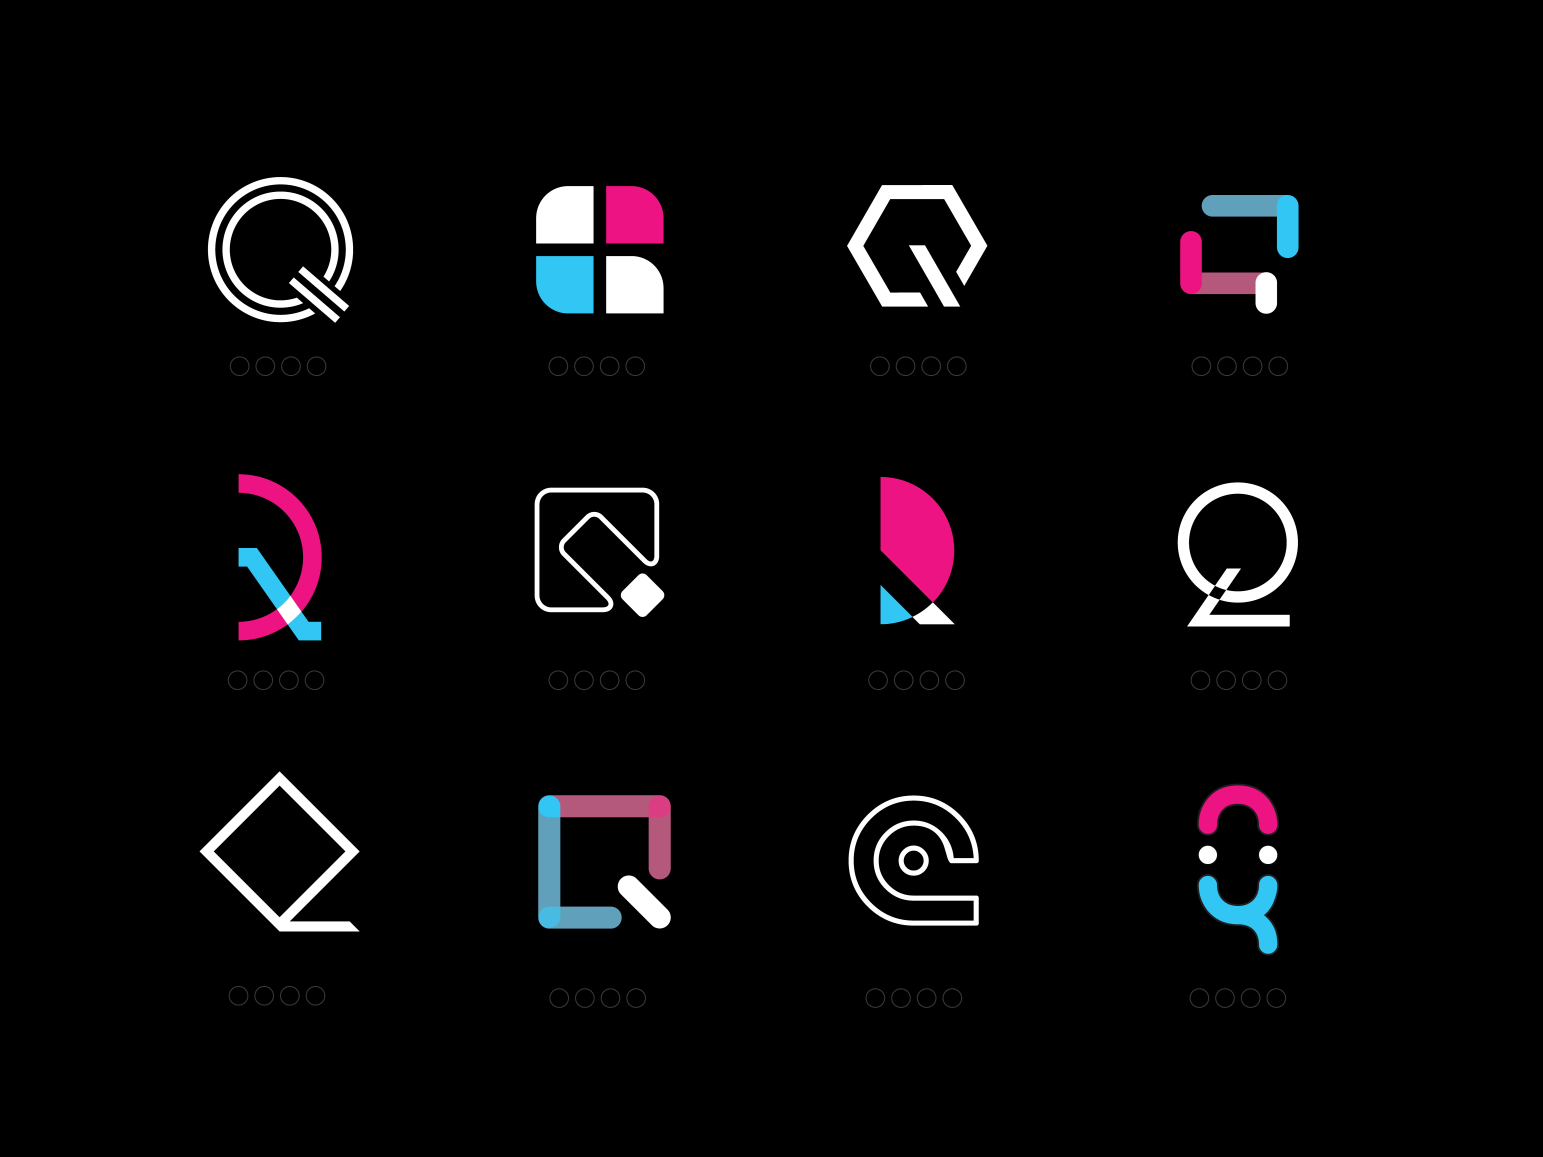 Hãy xem mẫu thiết kế biểu tượng Logo Q sáng tạo đầy tính sáng tạo và khác biệt để cập nhật xu hướng thị trường mới nhất. Hãy khám phá và tìm hiểu ngay!